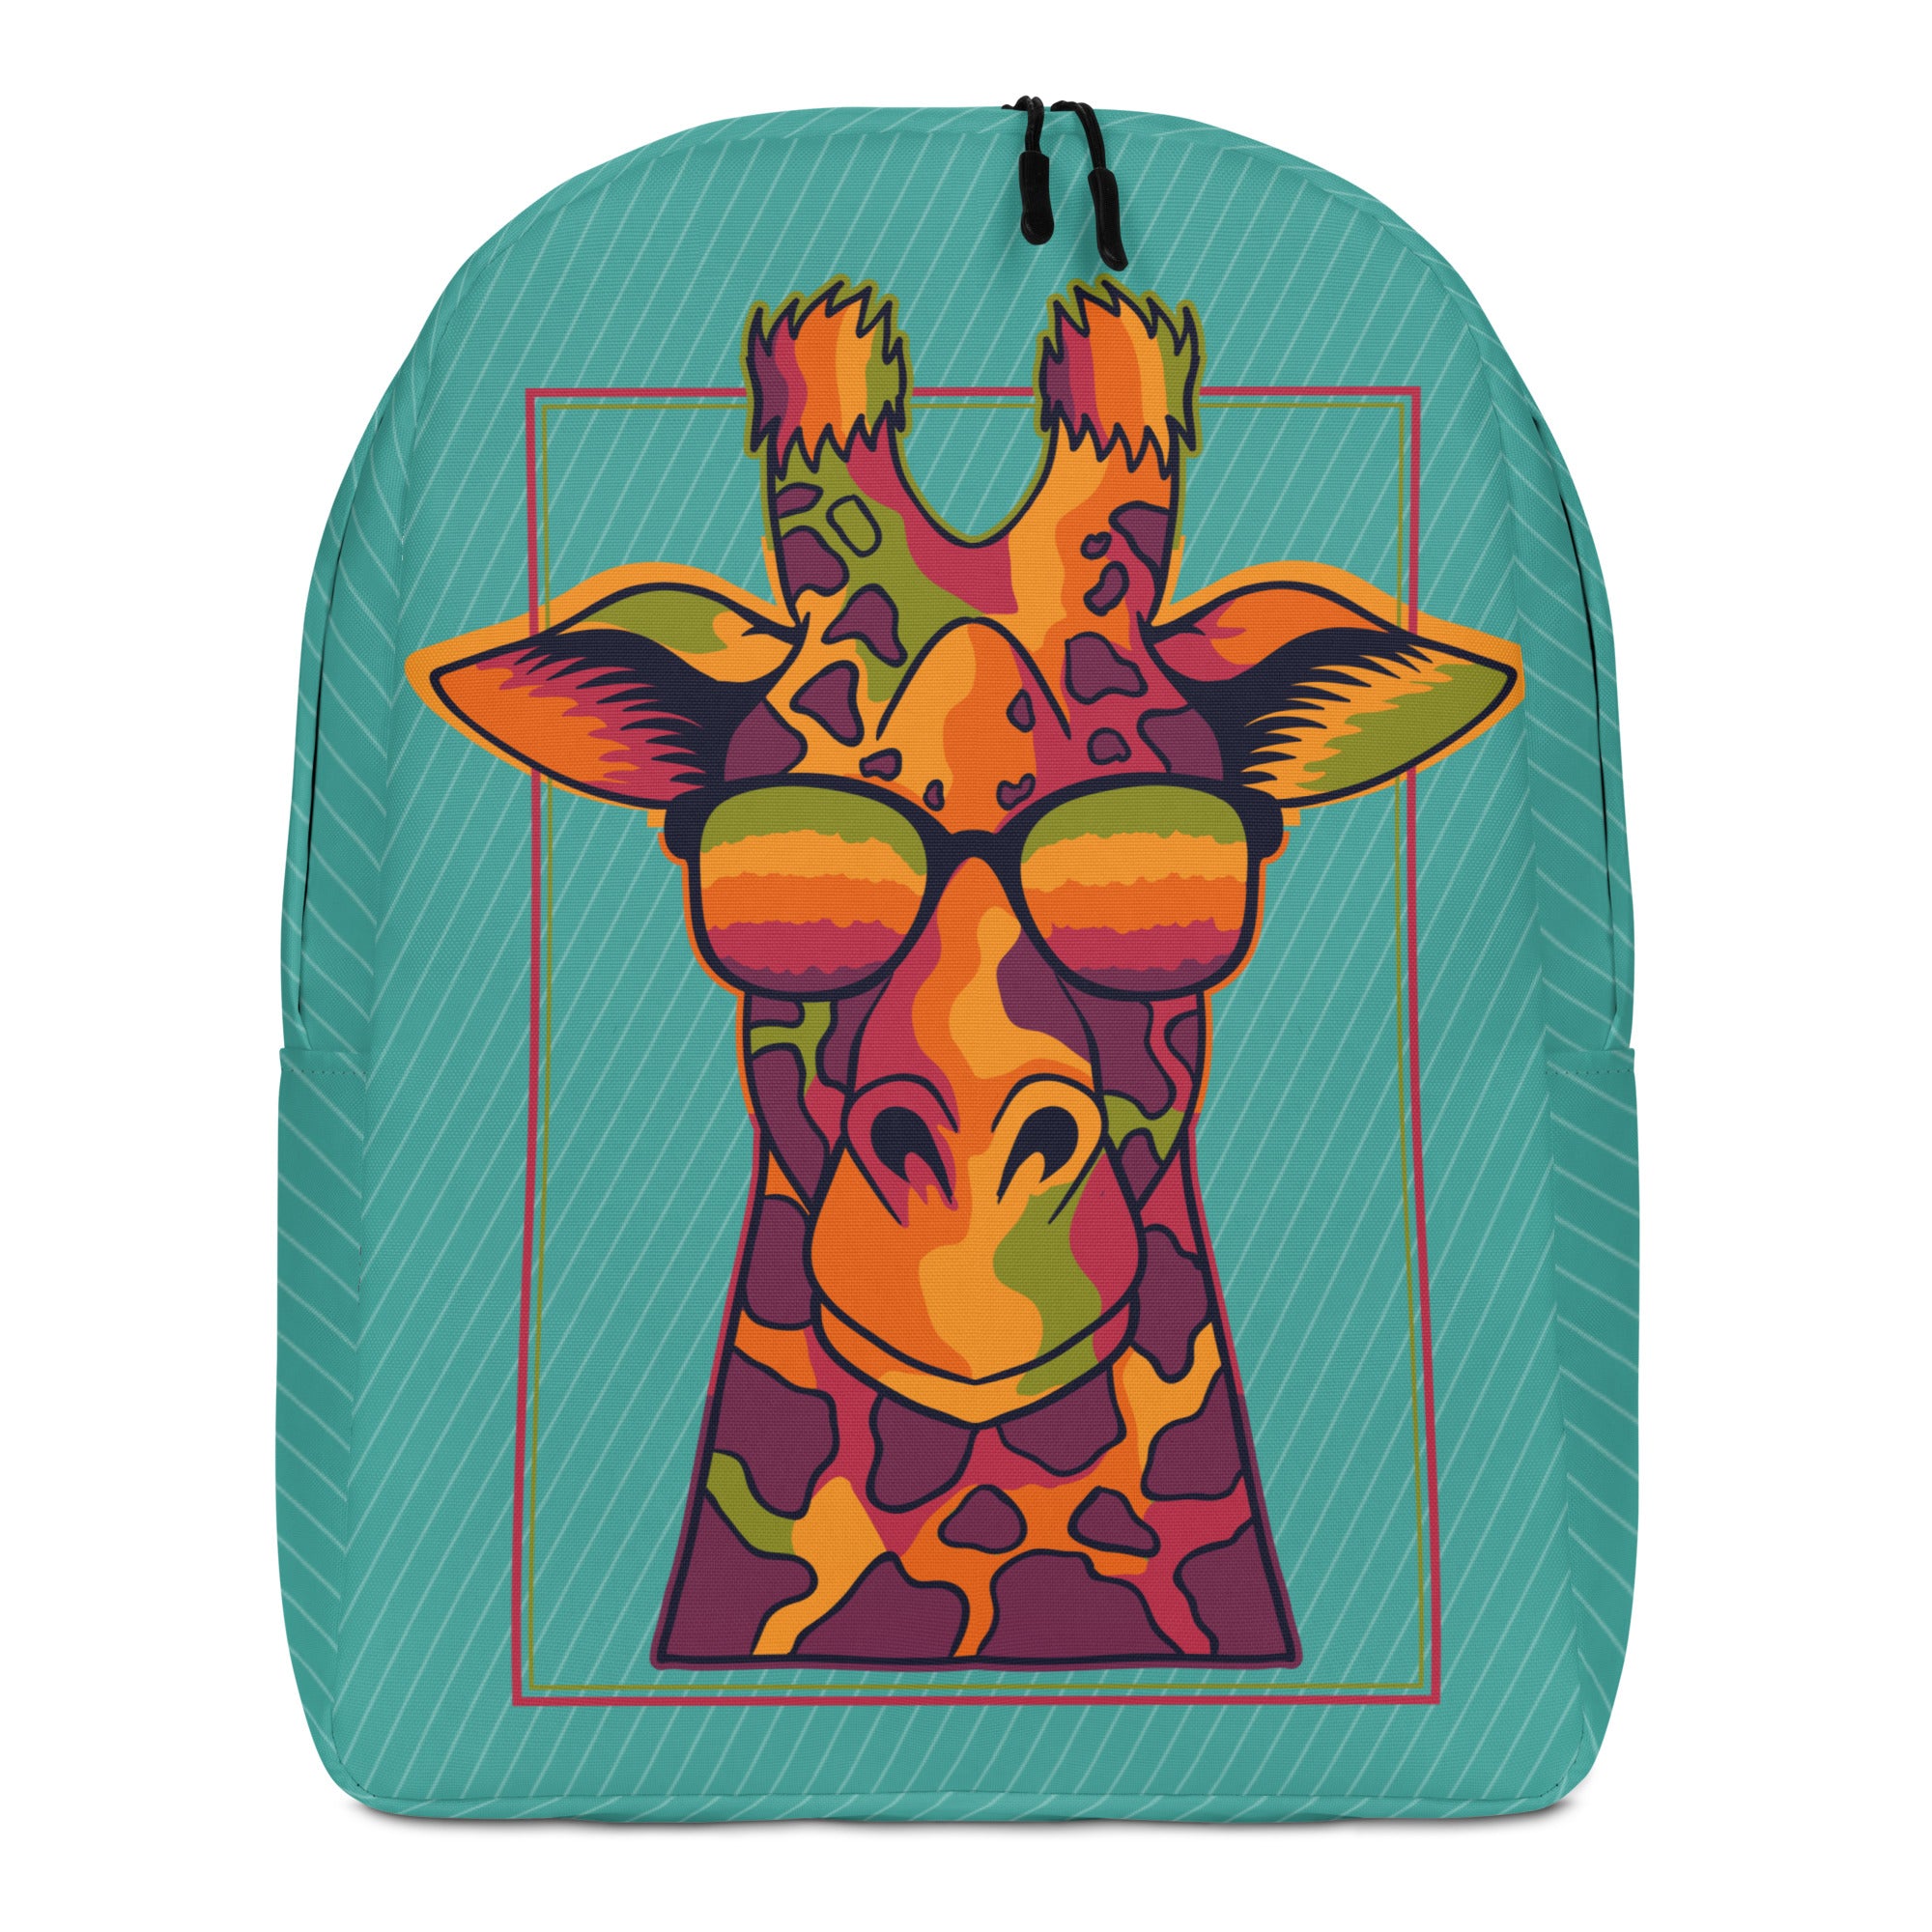 Minimalist Backpack Cool Giraffe